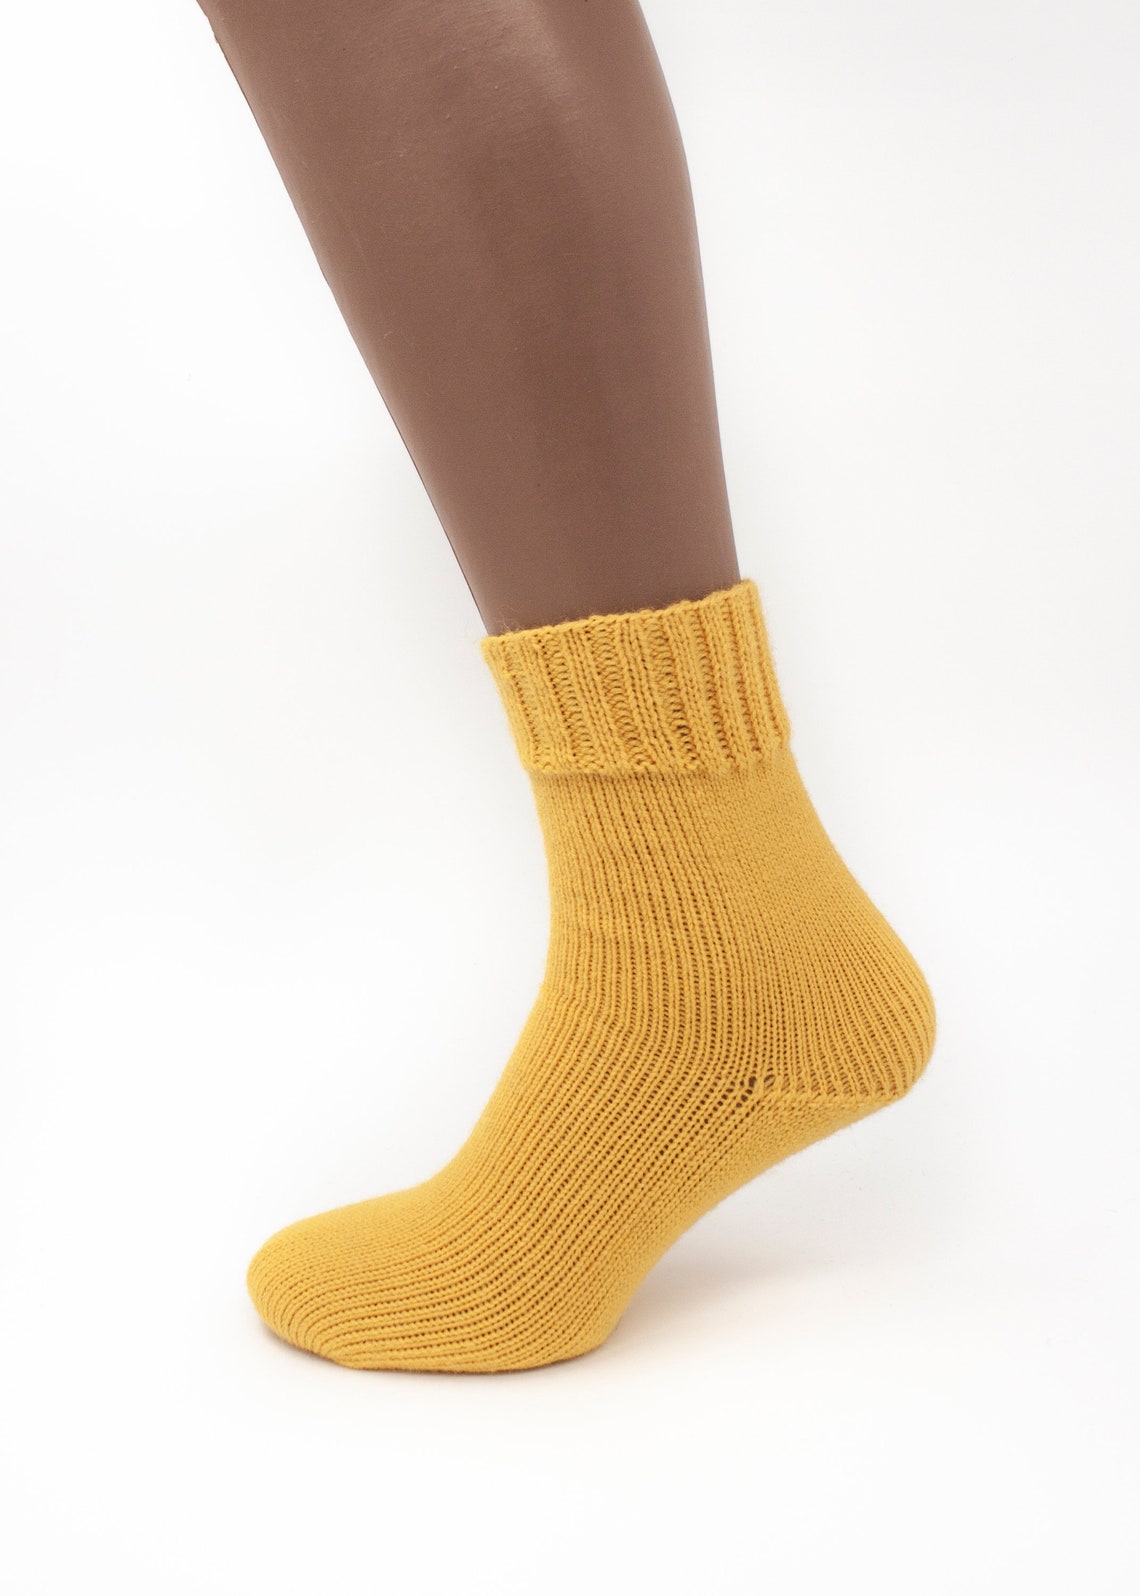 Yellow Hand Knitted Merino Wool Socks Warm Handmade socks | Etsy